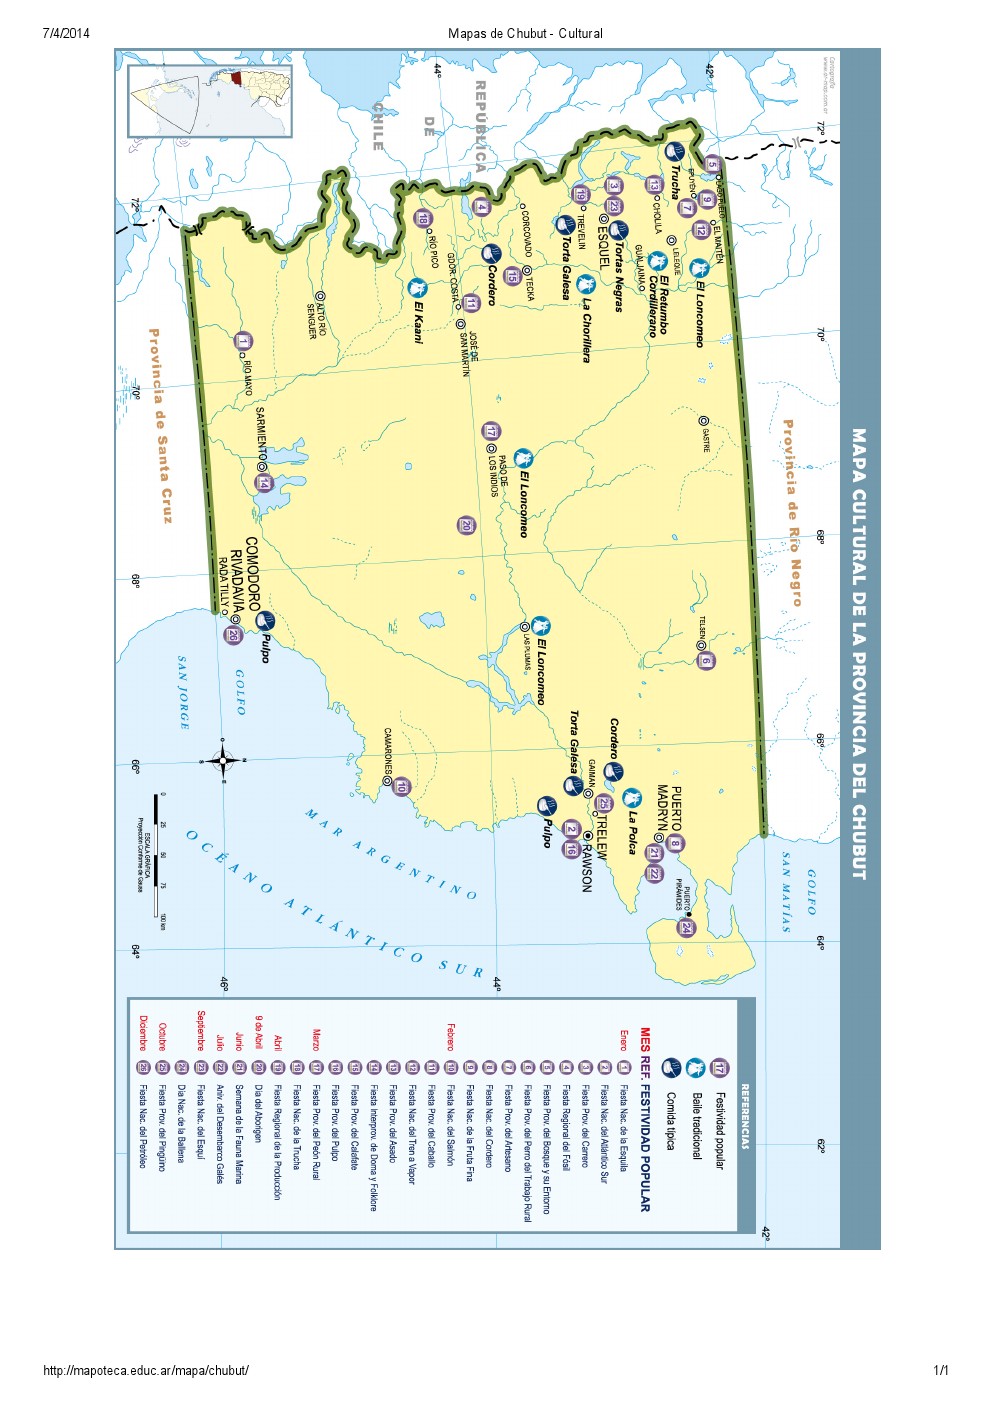 Mapa cultural del Chubut. Mapoteca de Educ.ar